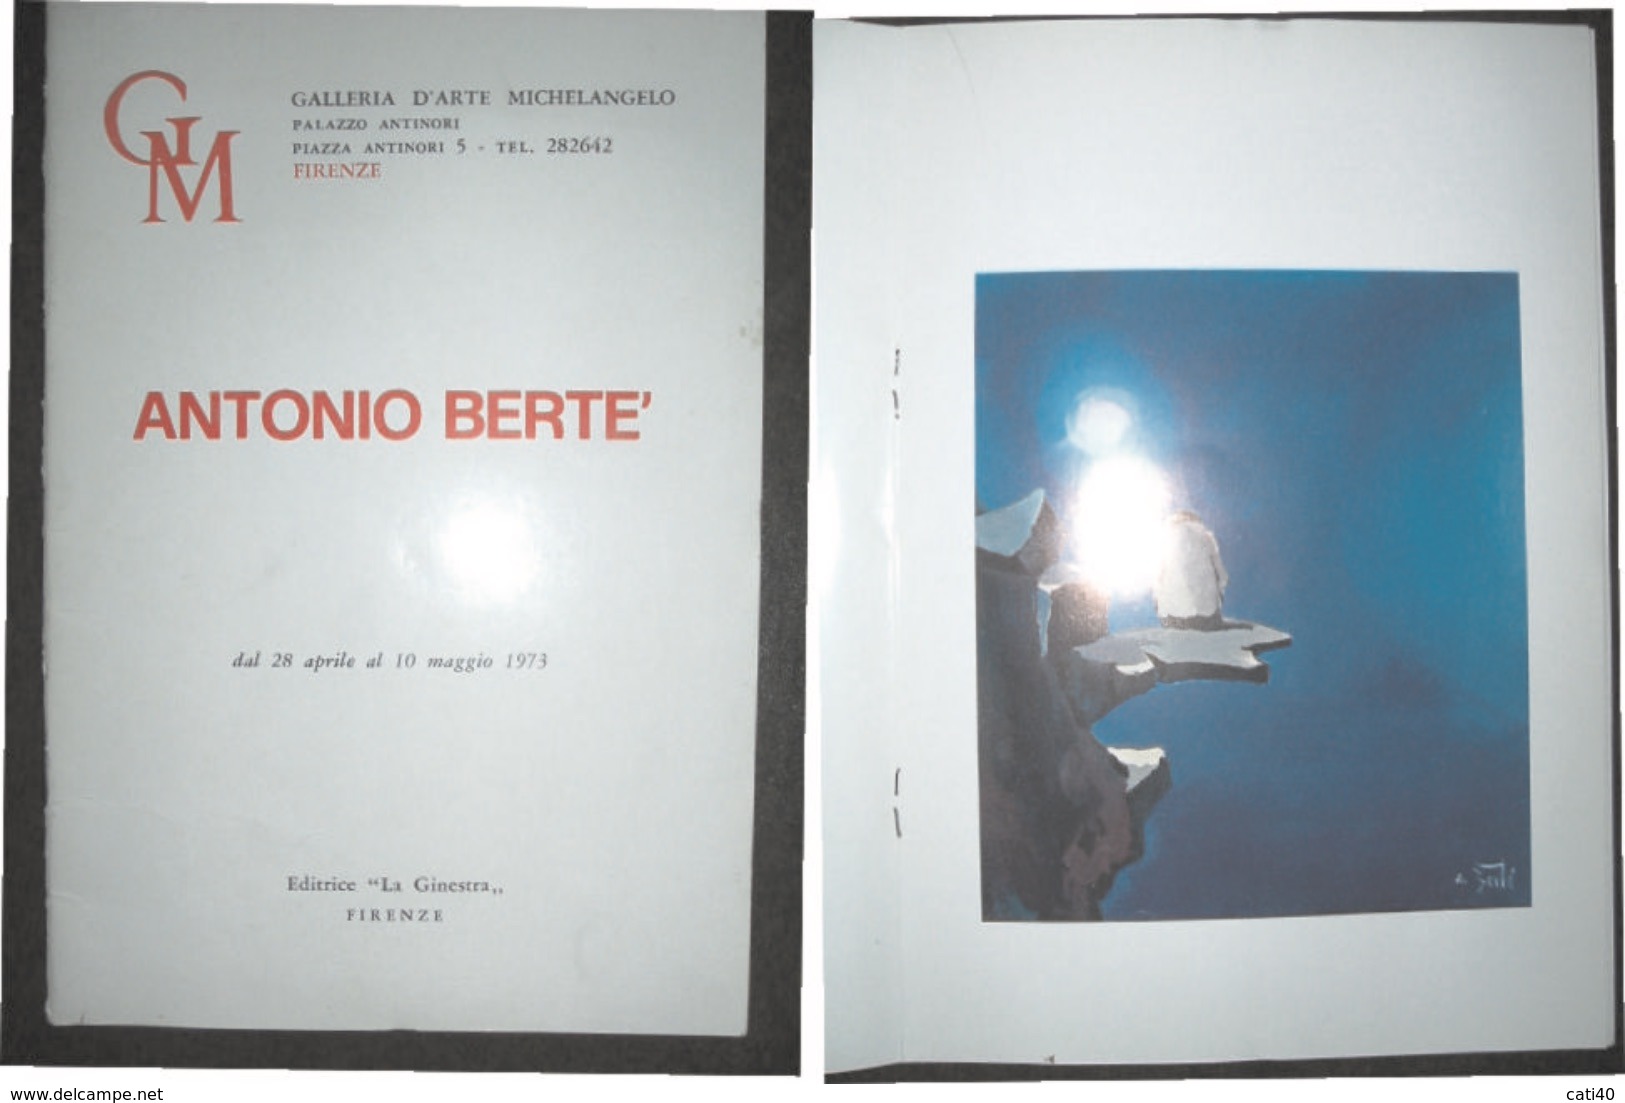 ANTONIO BERTE' CATALOGO DELLA MOSTRA PERSONALE ALLA GALLERIA D'ARTE MICHELANGELO FIRENZE DAL 28 APRILE AL 10 MAGGIO 1973 - Scientific Texts